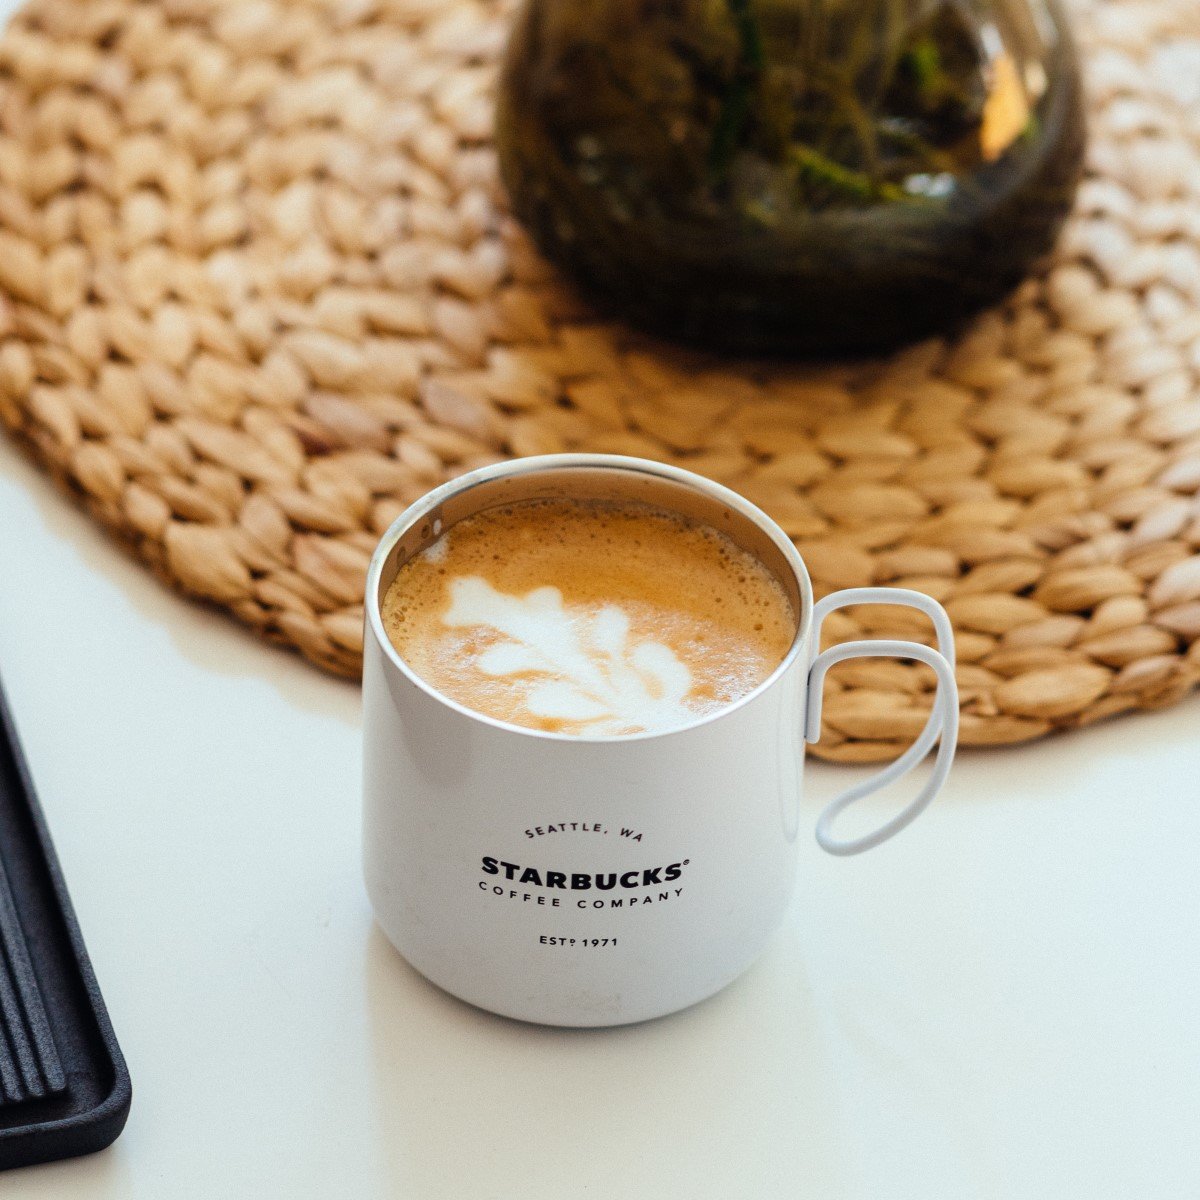 hot latte in white starbucks ceramic mug with logo on white table